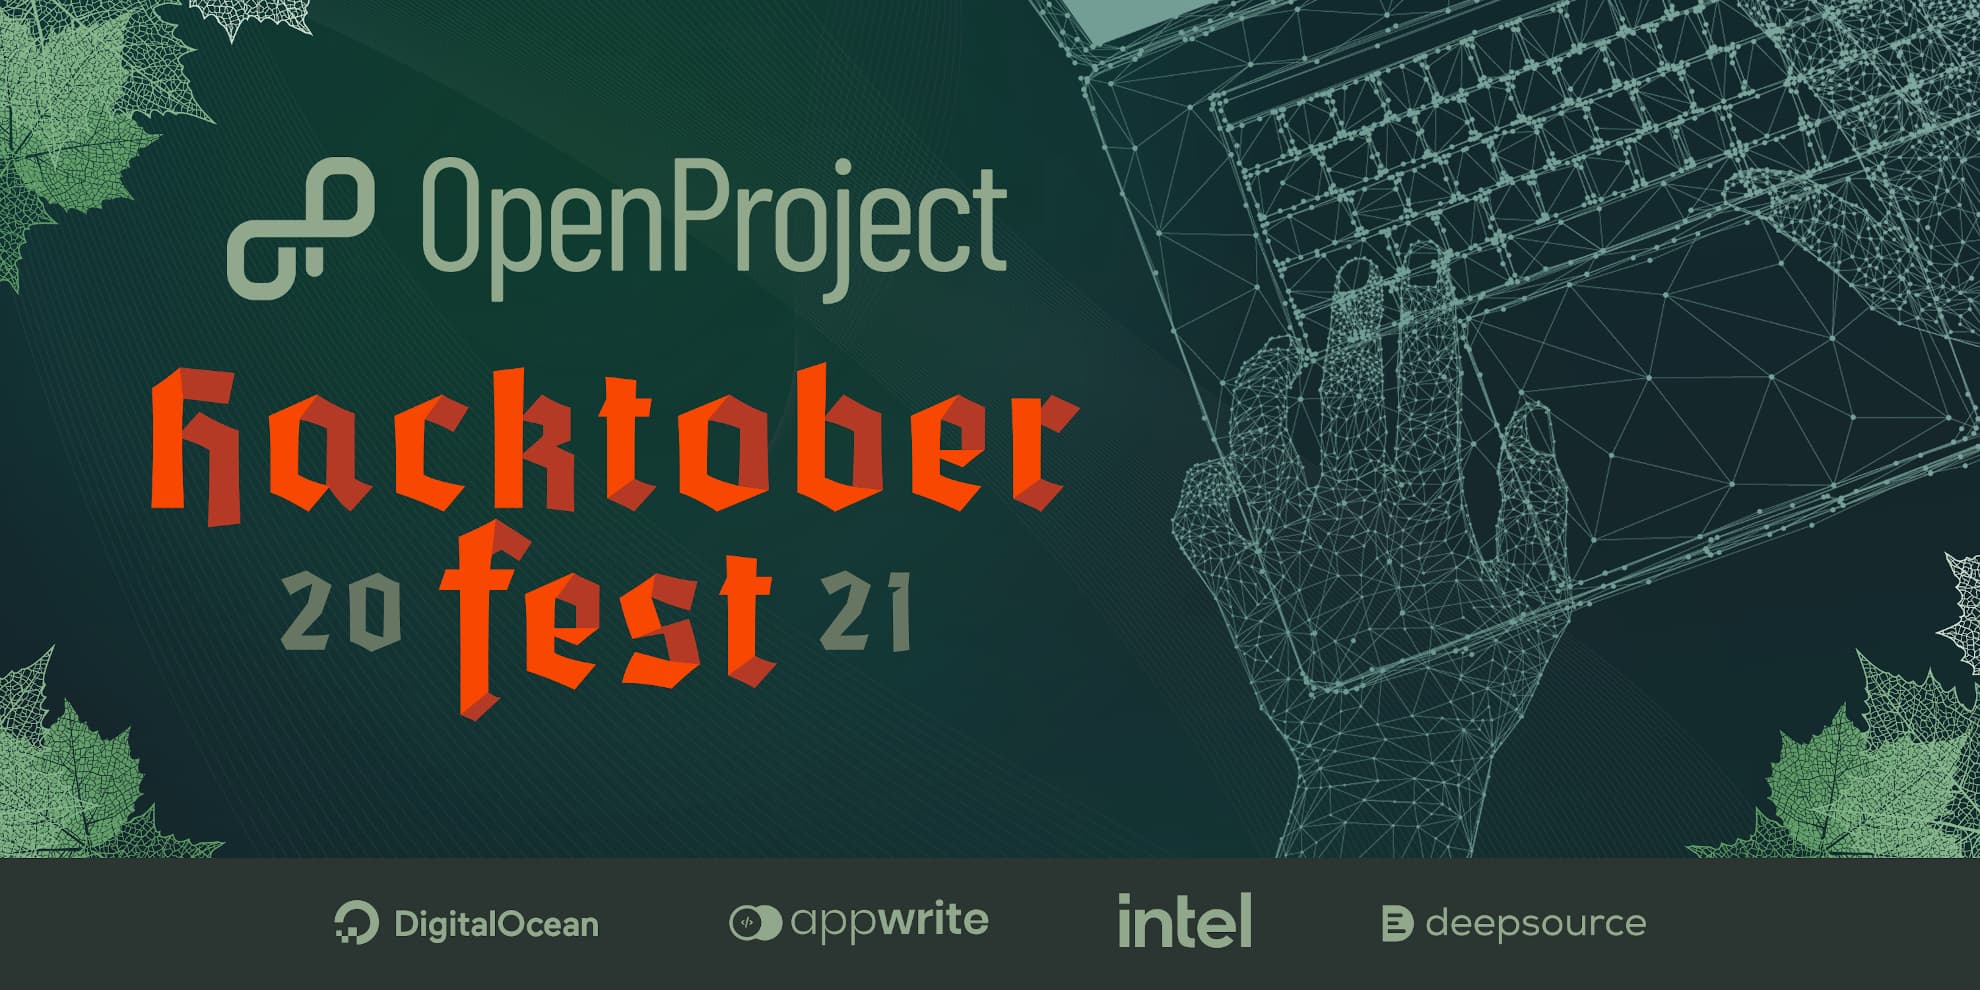 OpenProject's guide for Hacktoberfest 2021